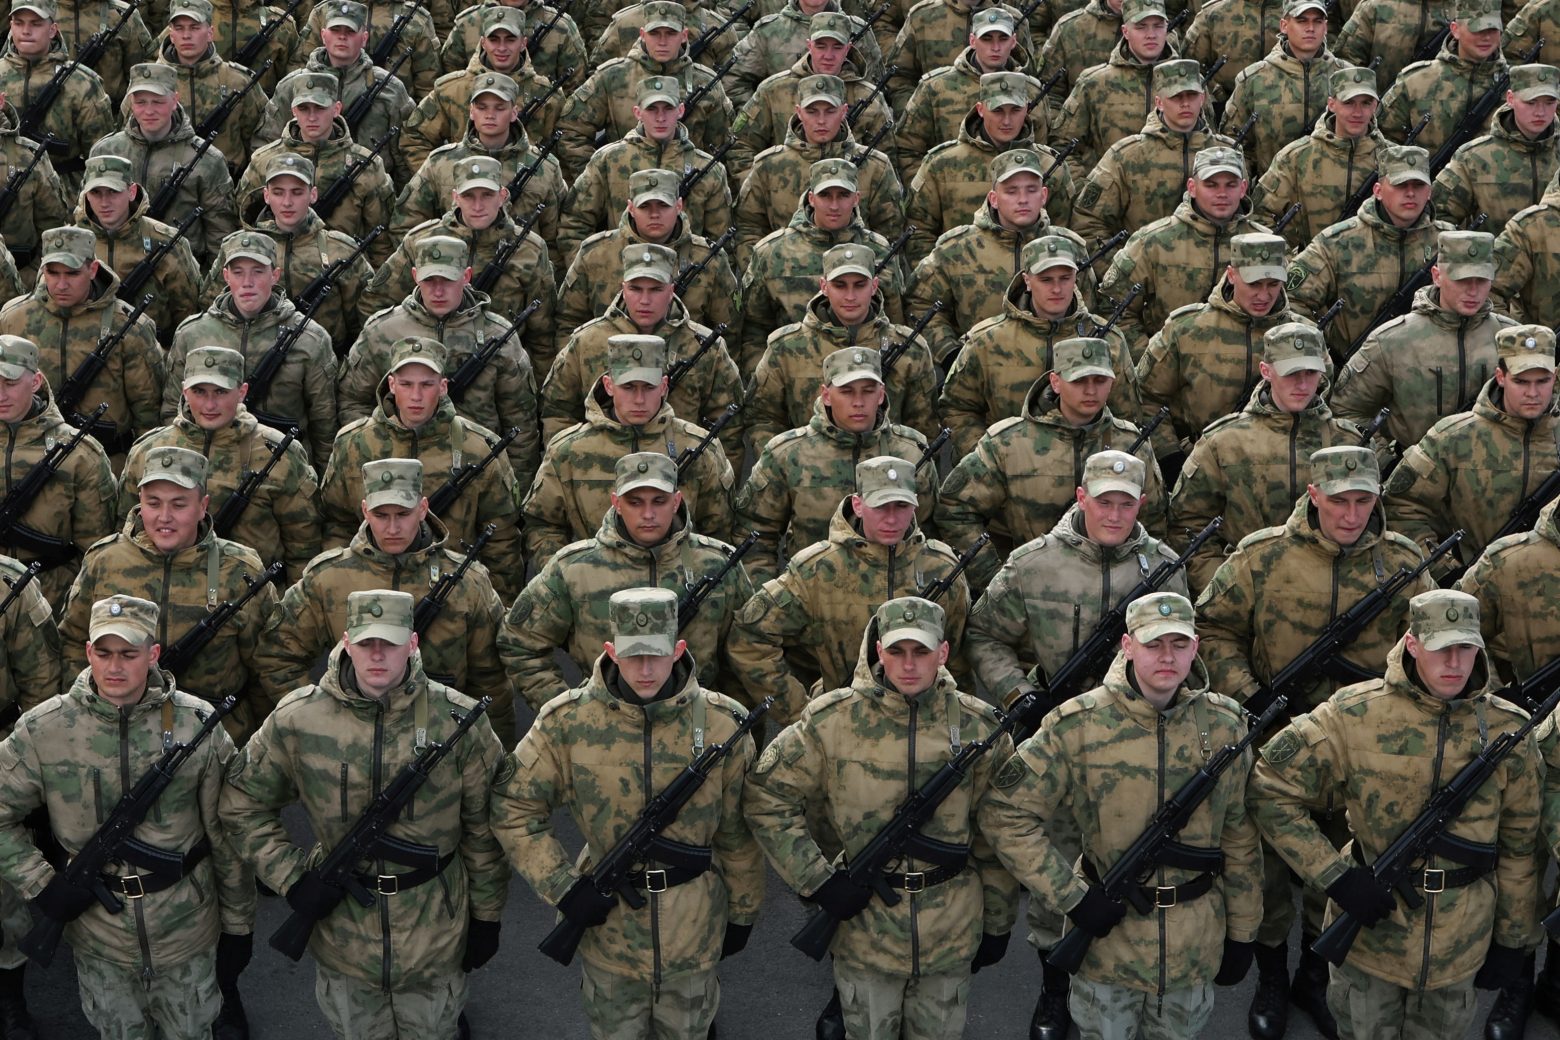 Πόλεμος στην Ουκρανία: Επτά προβλέψεις για παγκόσμια σύγκρουση που – ευτυχώς – διαψεύστηκαν από την ιστορία